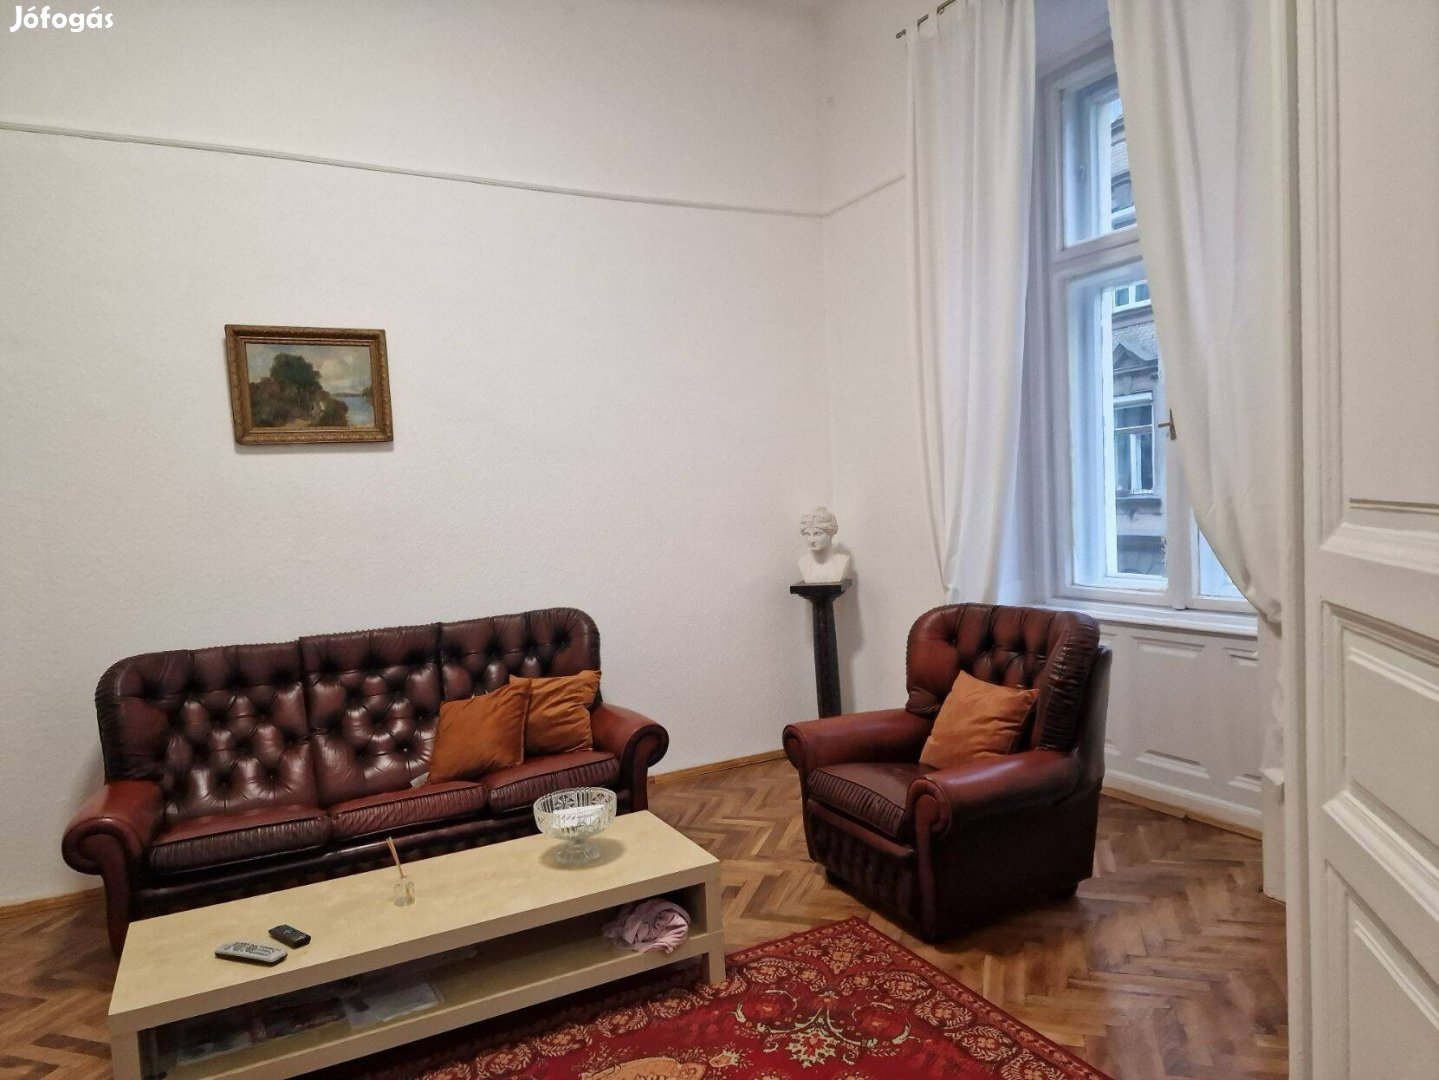 Airbnb-re is alkalmas Hősök Tere közelében 2 bejáratos 2 szobás lakás